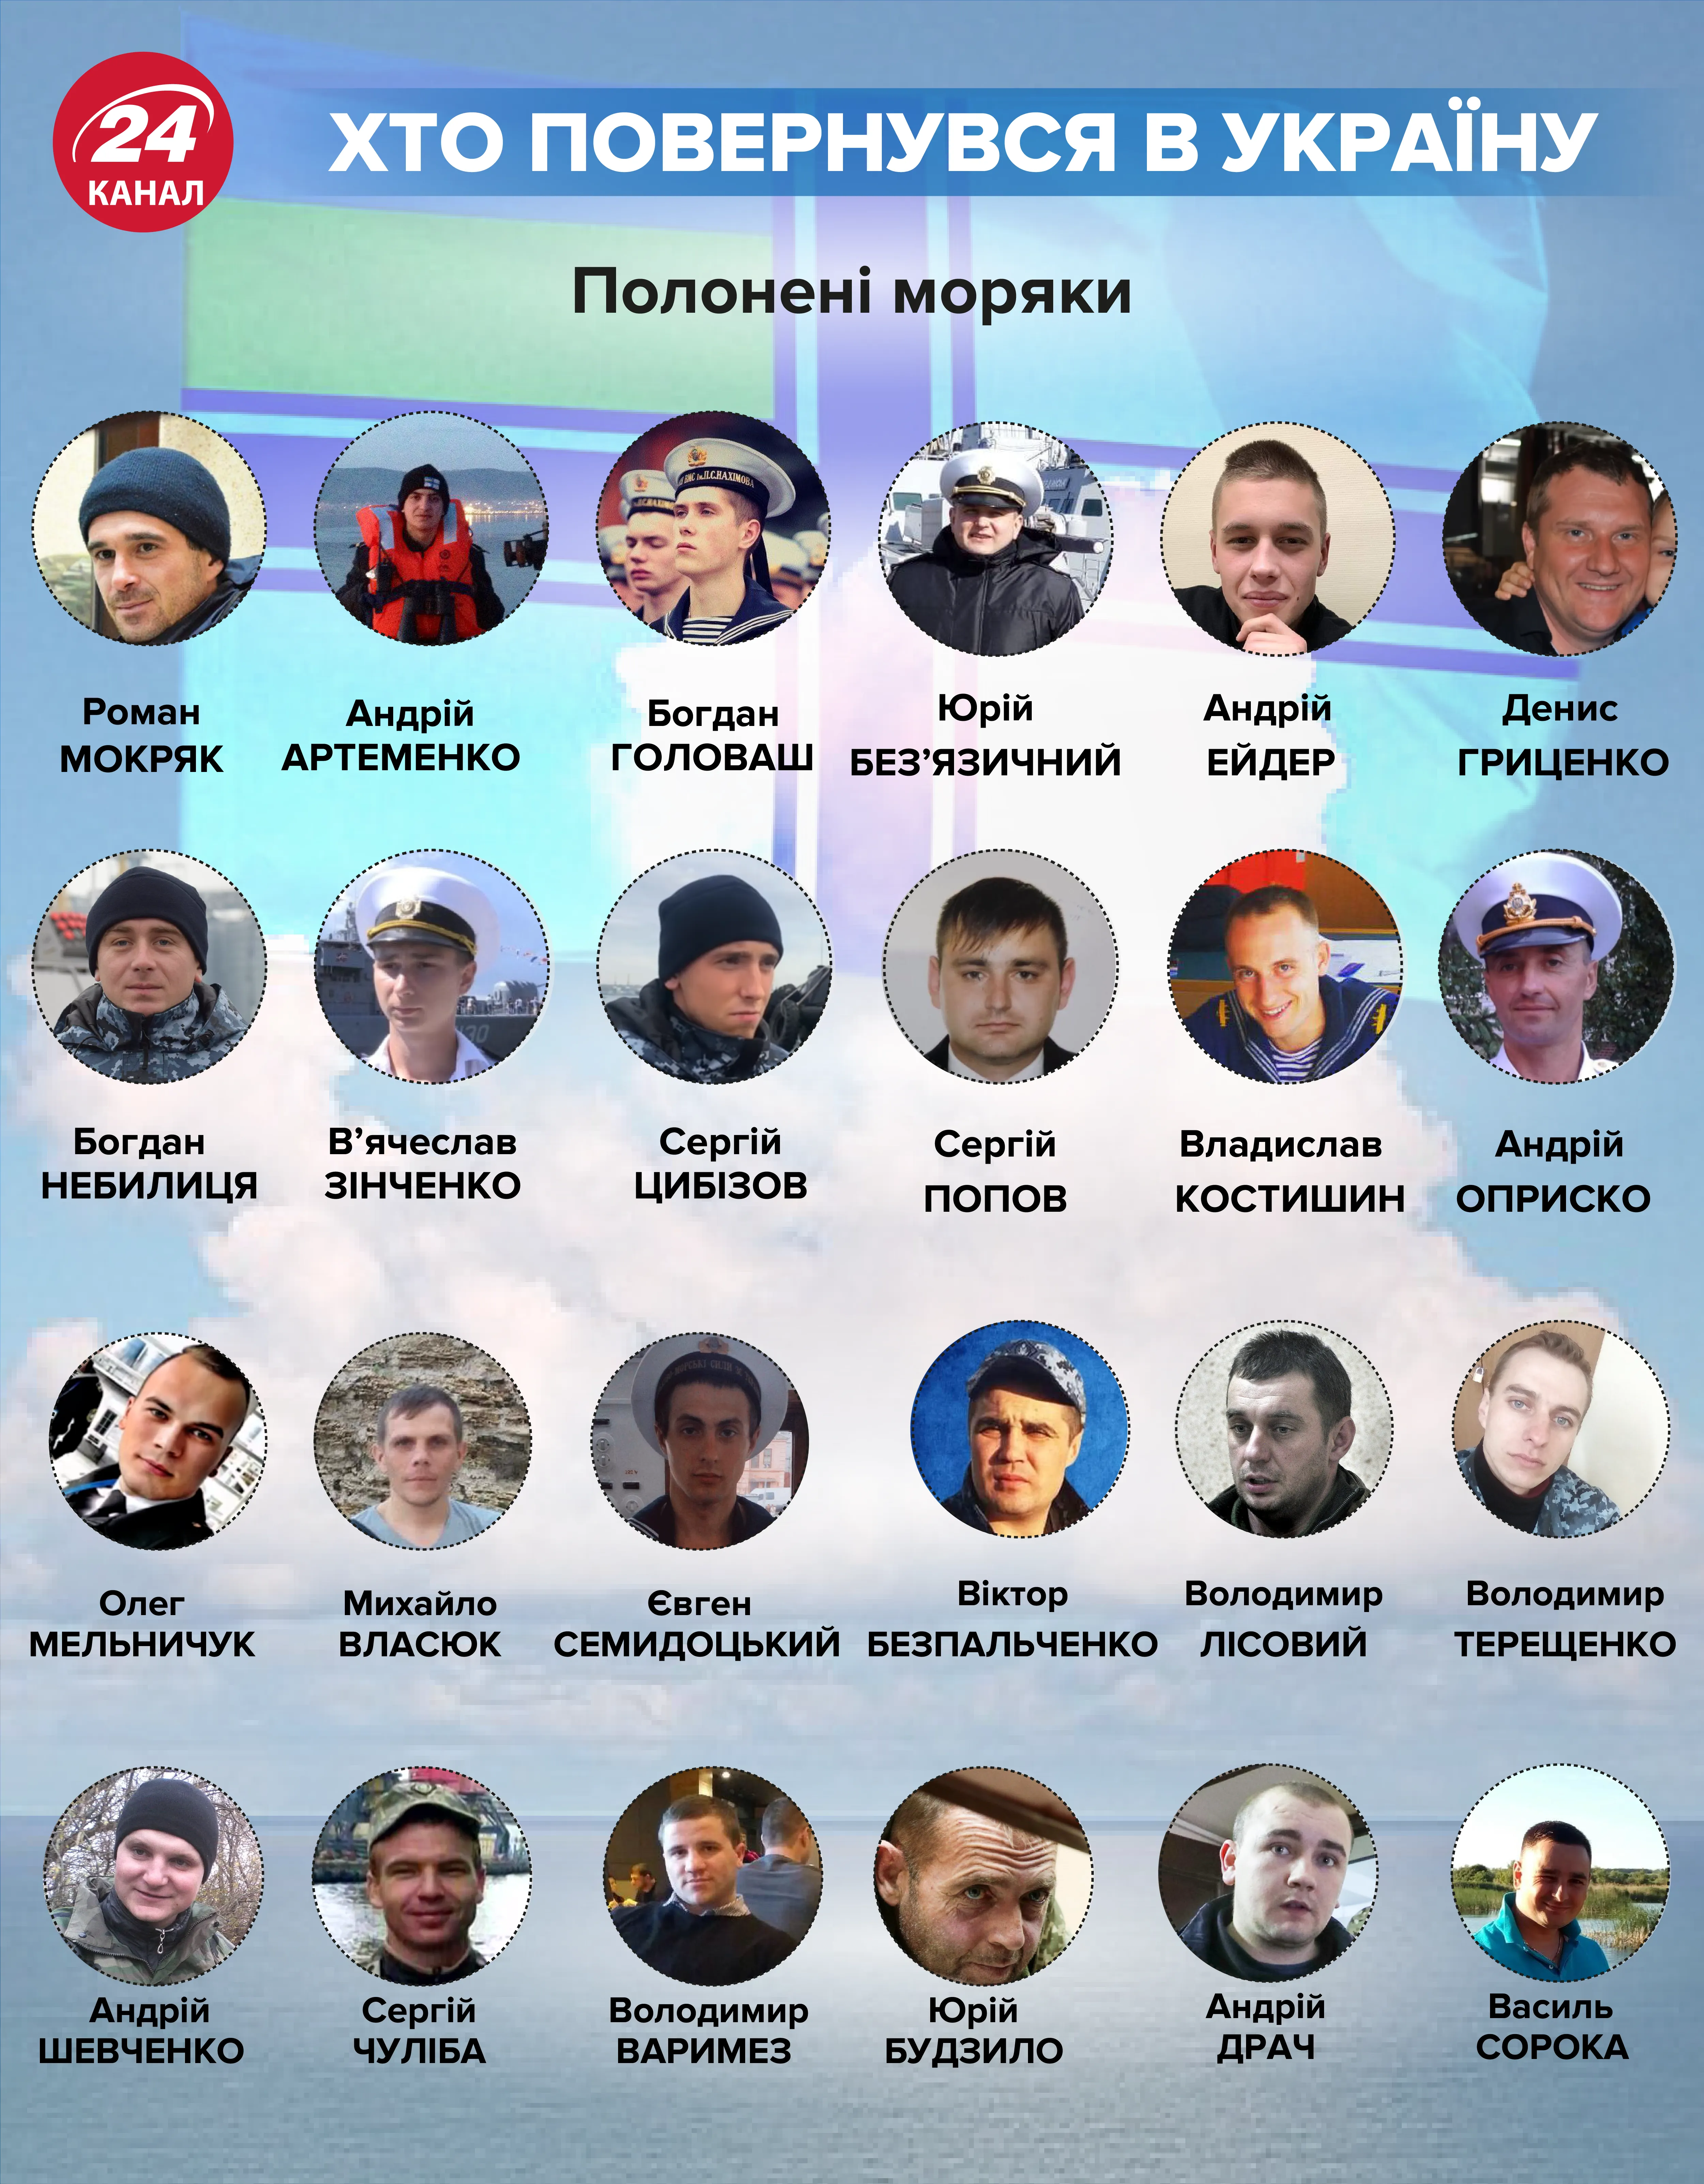 полонені моряки ВМС України імена список інфографіка